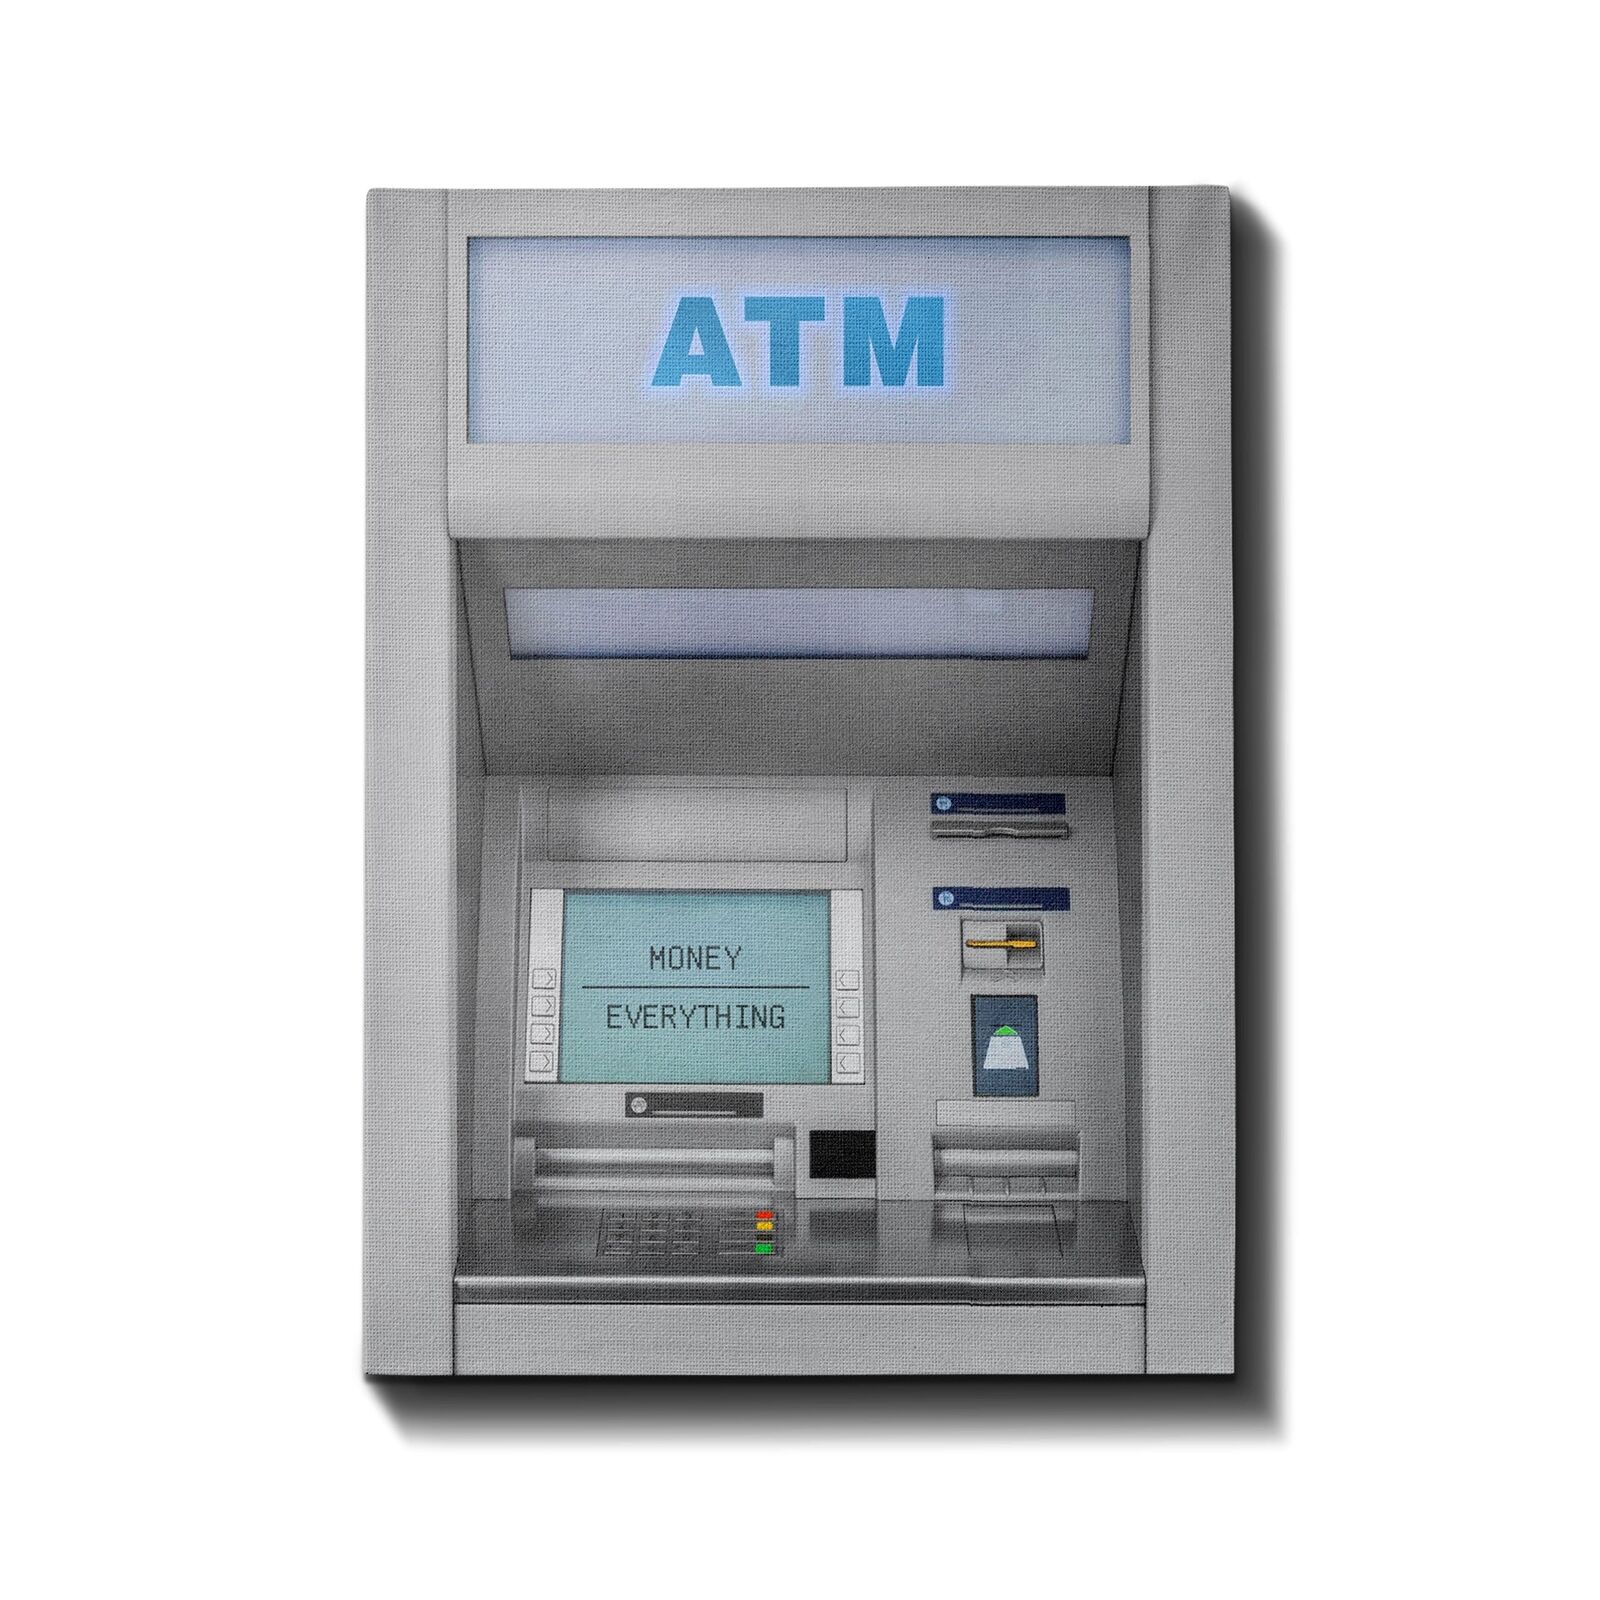 ATM Machine ( White Edition ) - Motivational Wallart, Money Canvas